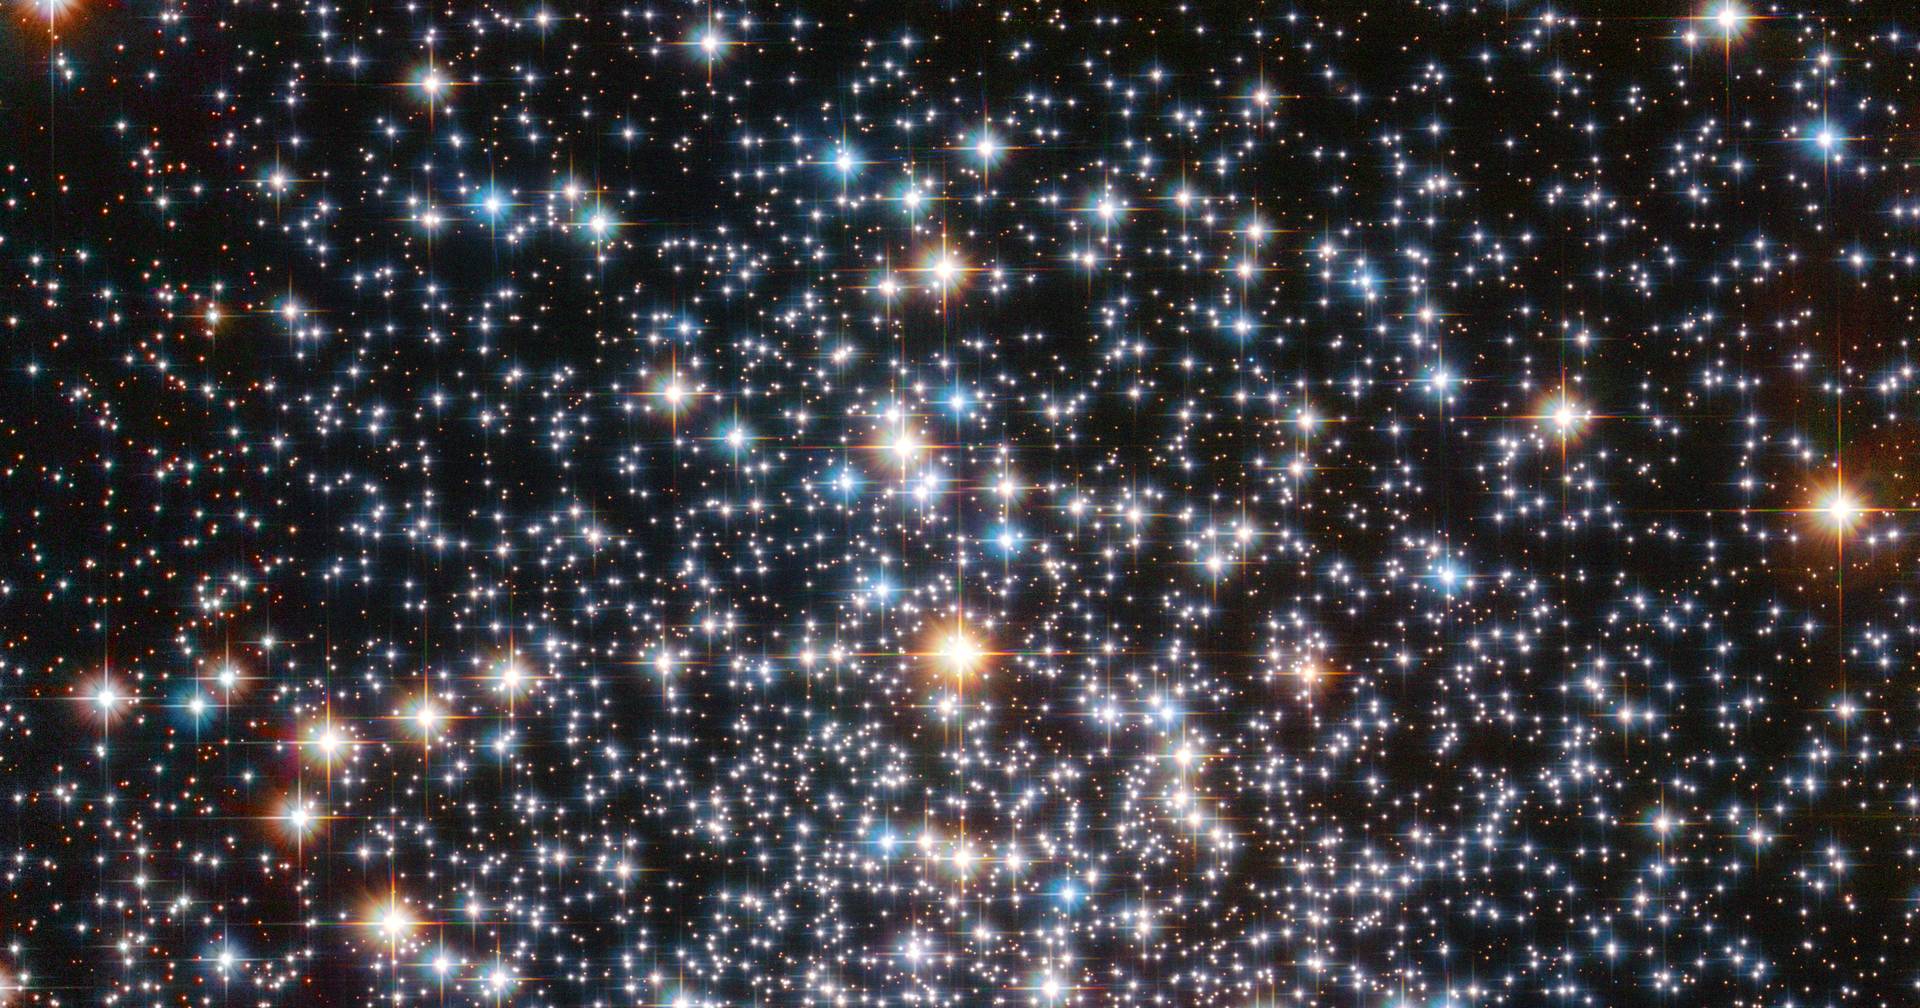 Hubble busca un agujero negro cerca de nosotros en las mejores imágenes de la Tierra y el espacio